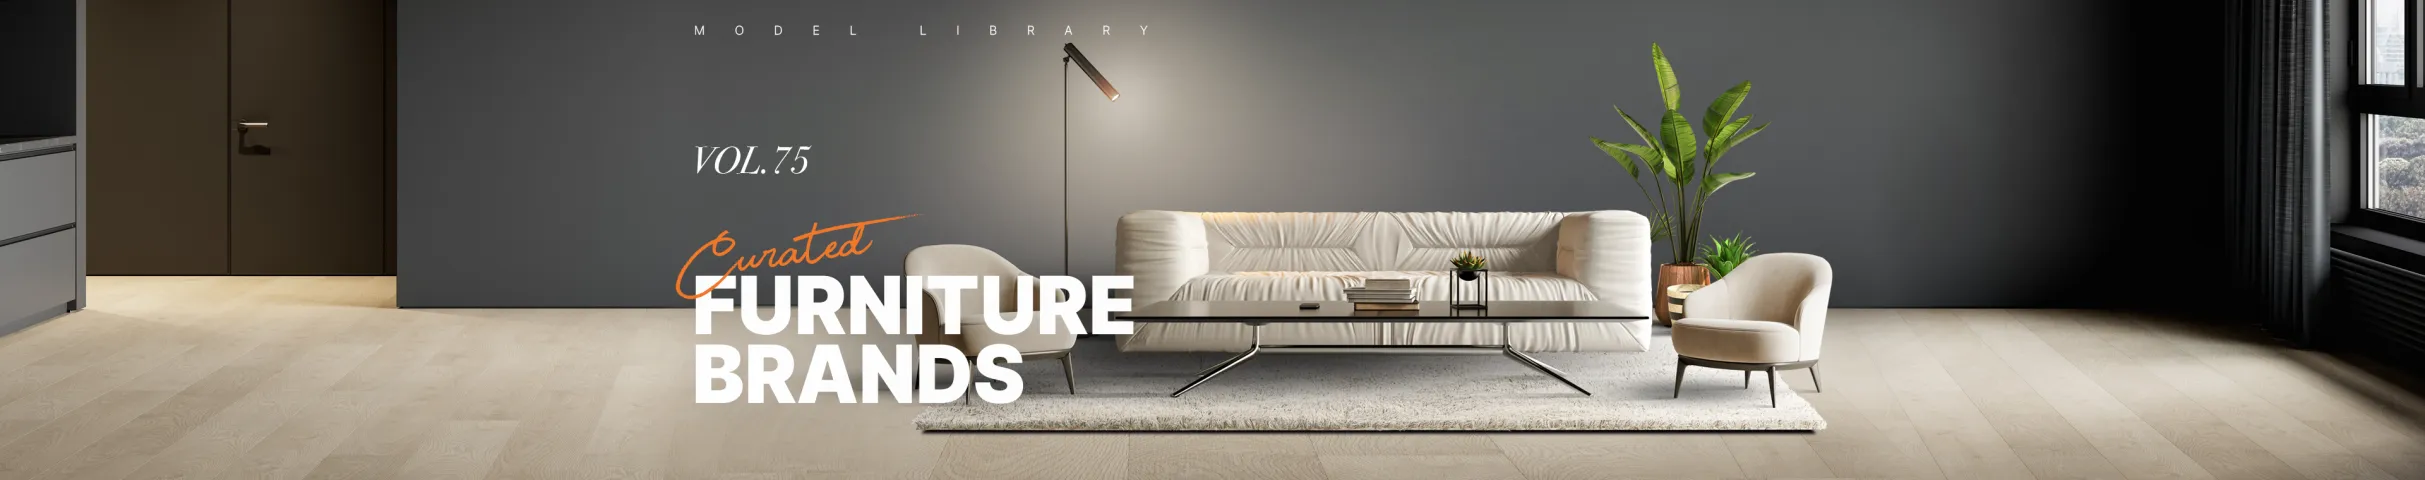 Curated Furniture Brands